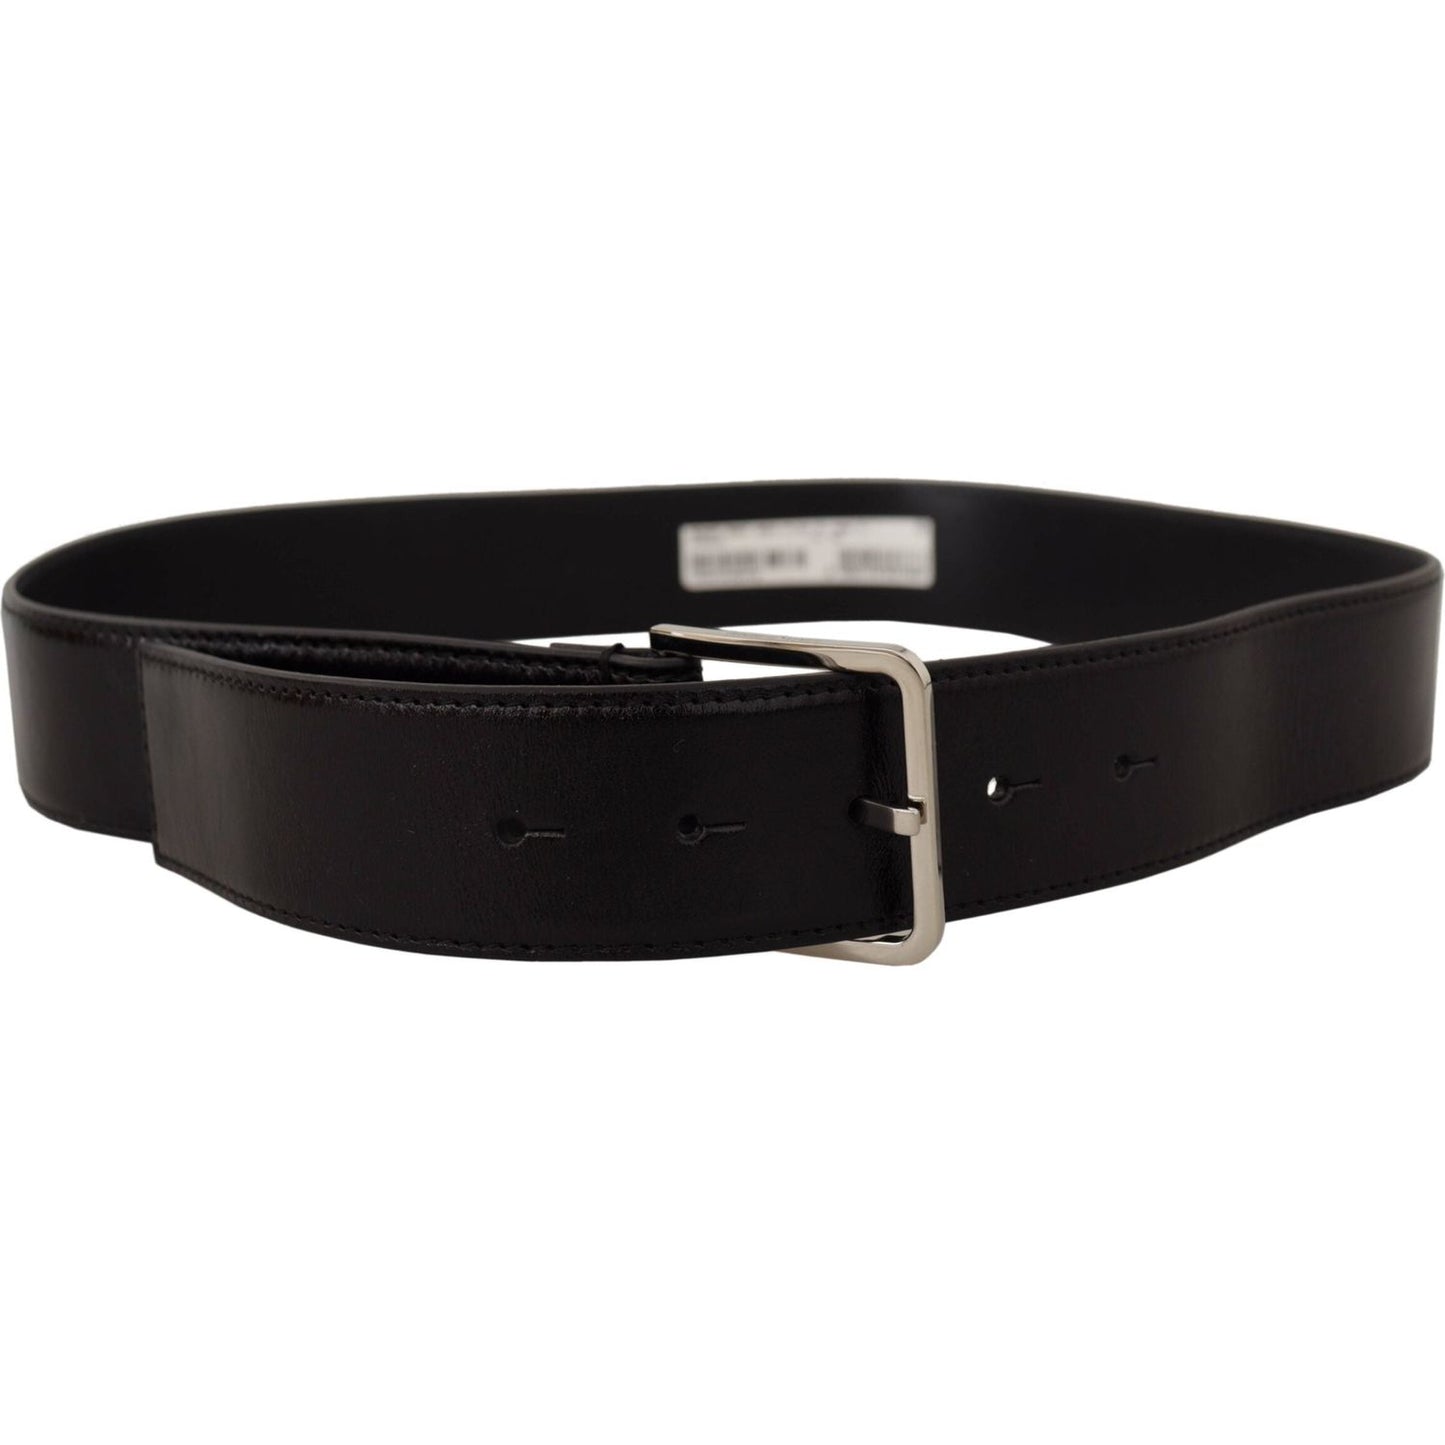 Dolce & Gabbana Elegant Leather Belt with Metal Buckle black-calf-leather-logo-engraved-metal-buckle-belt-9